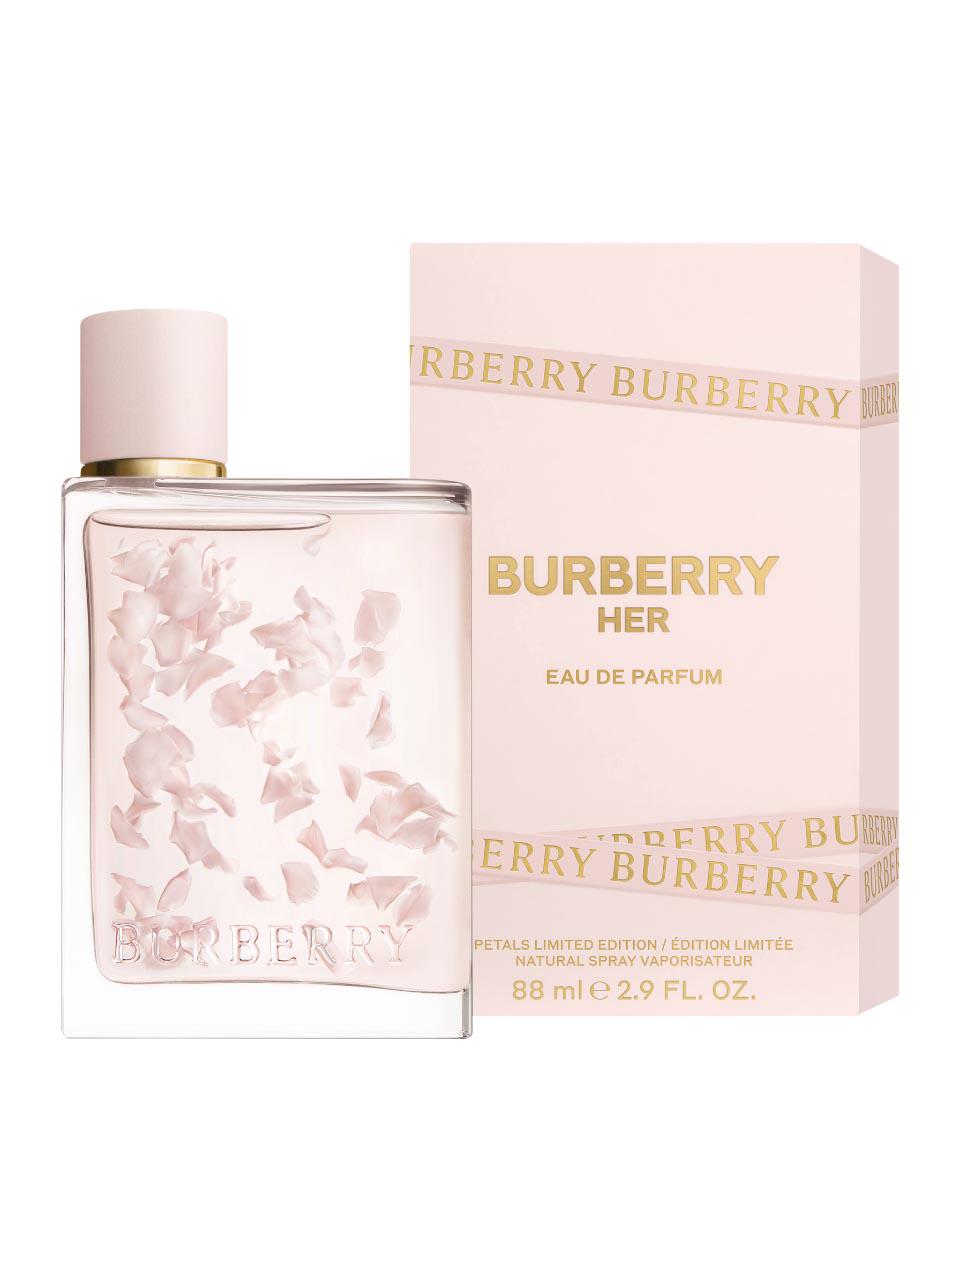 Her Eau De Parfum Burberry Ulta Beauty, 56% OFF